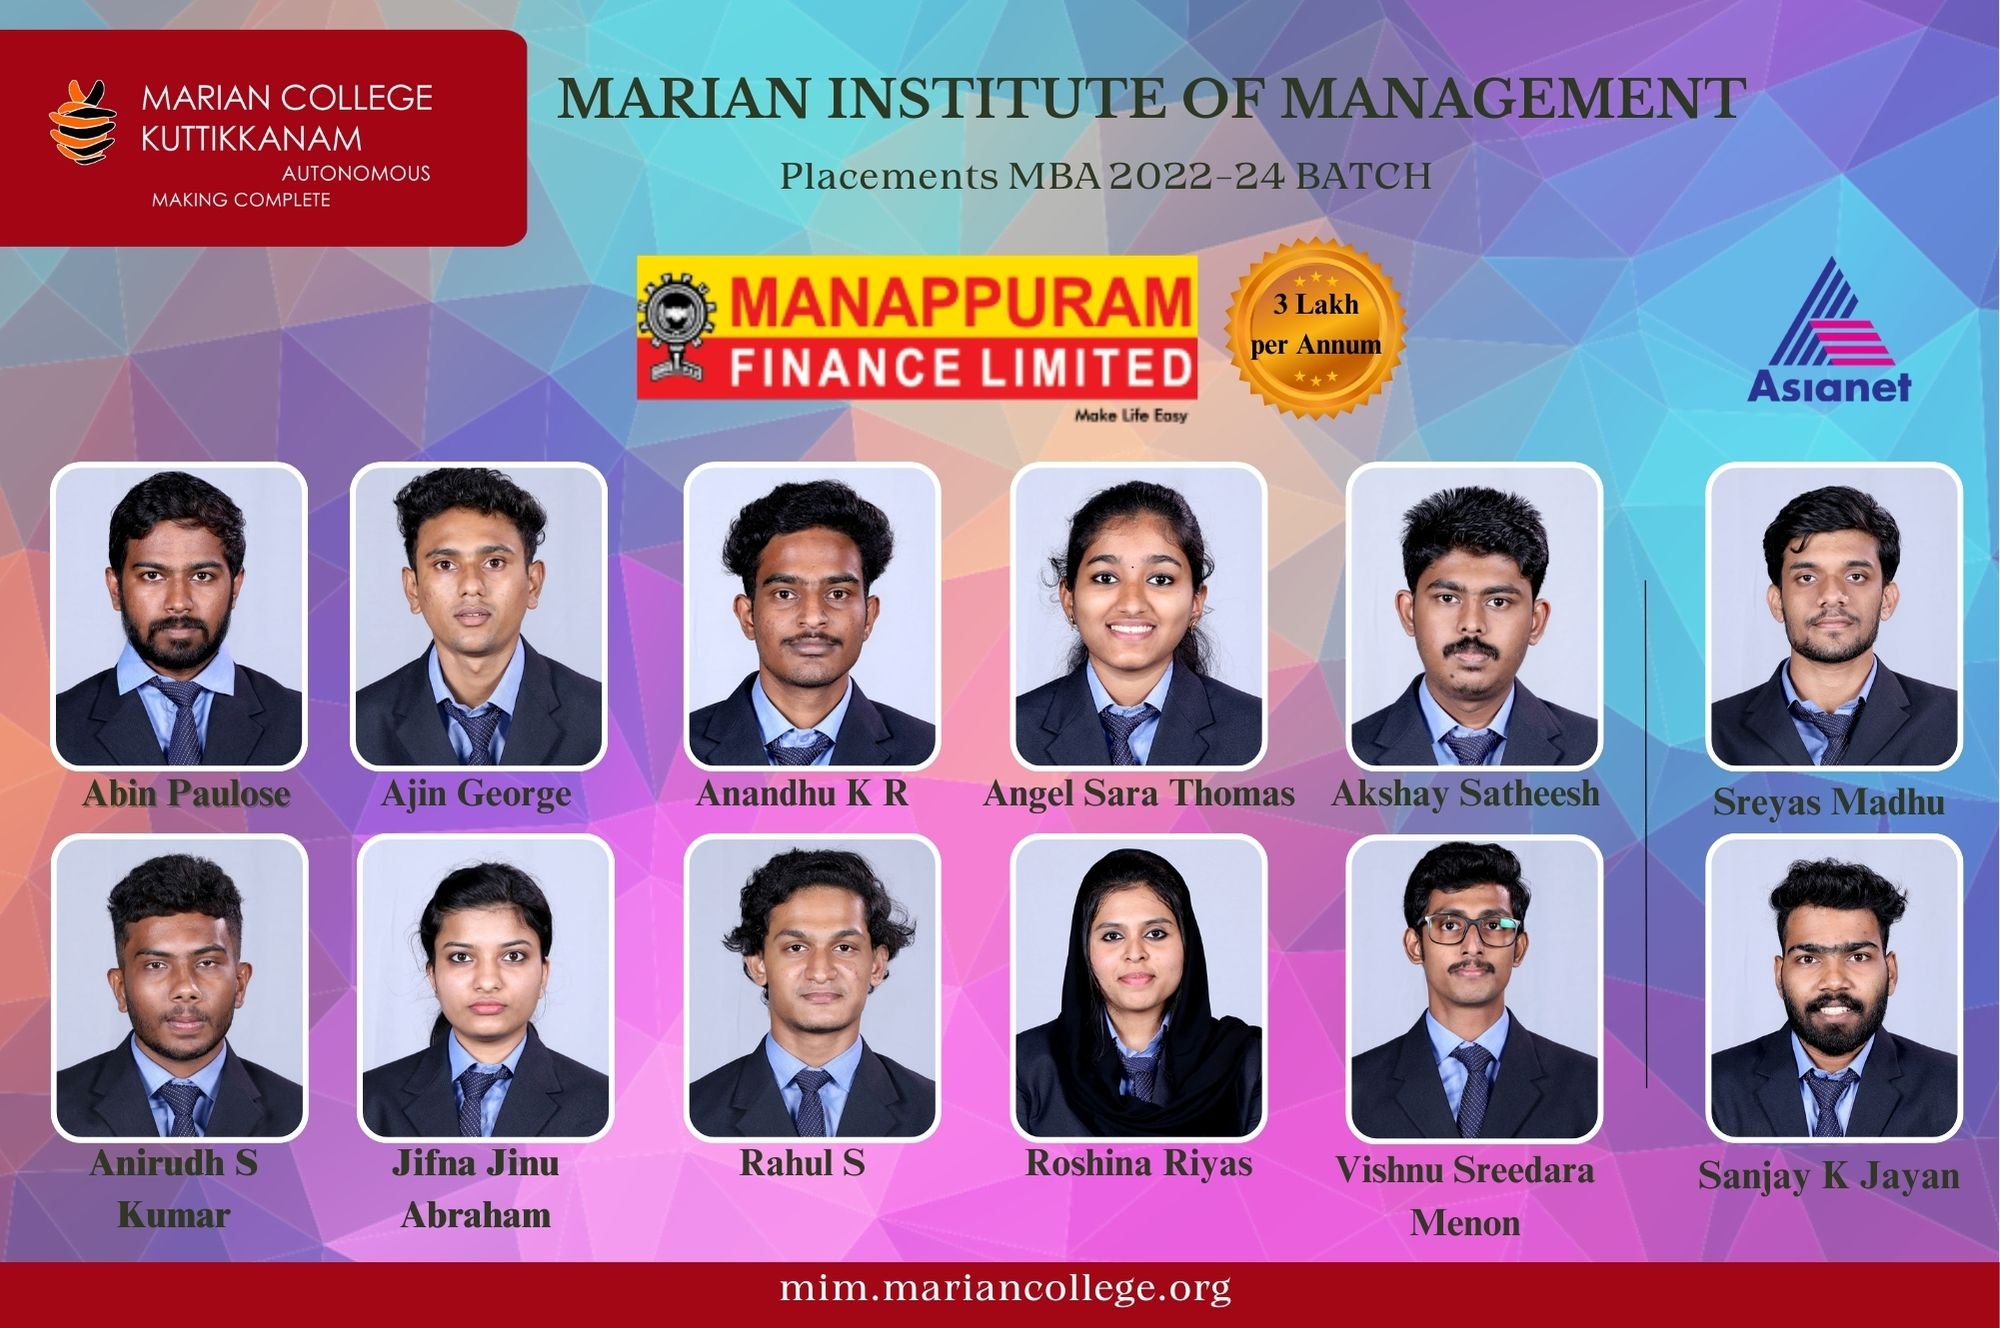 Marian Institute of Management